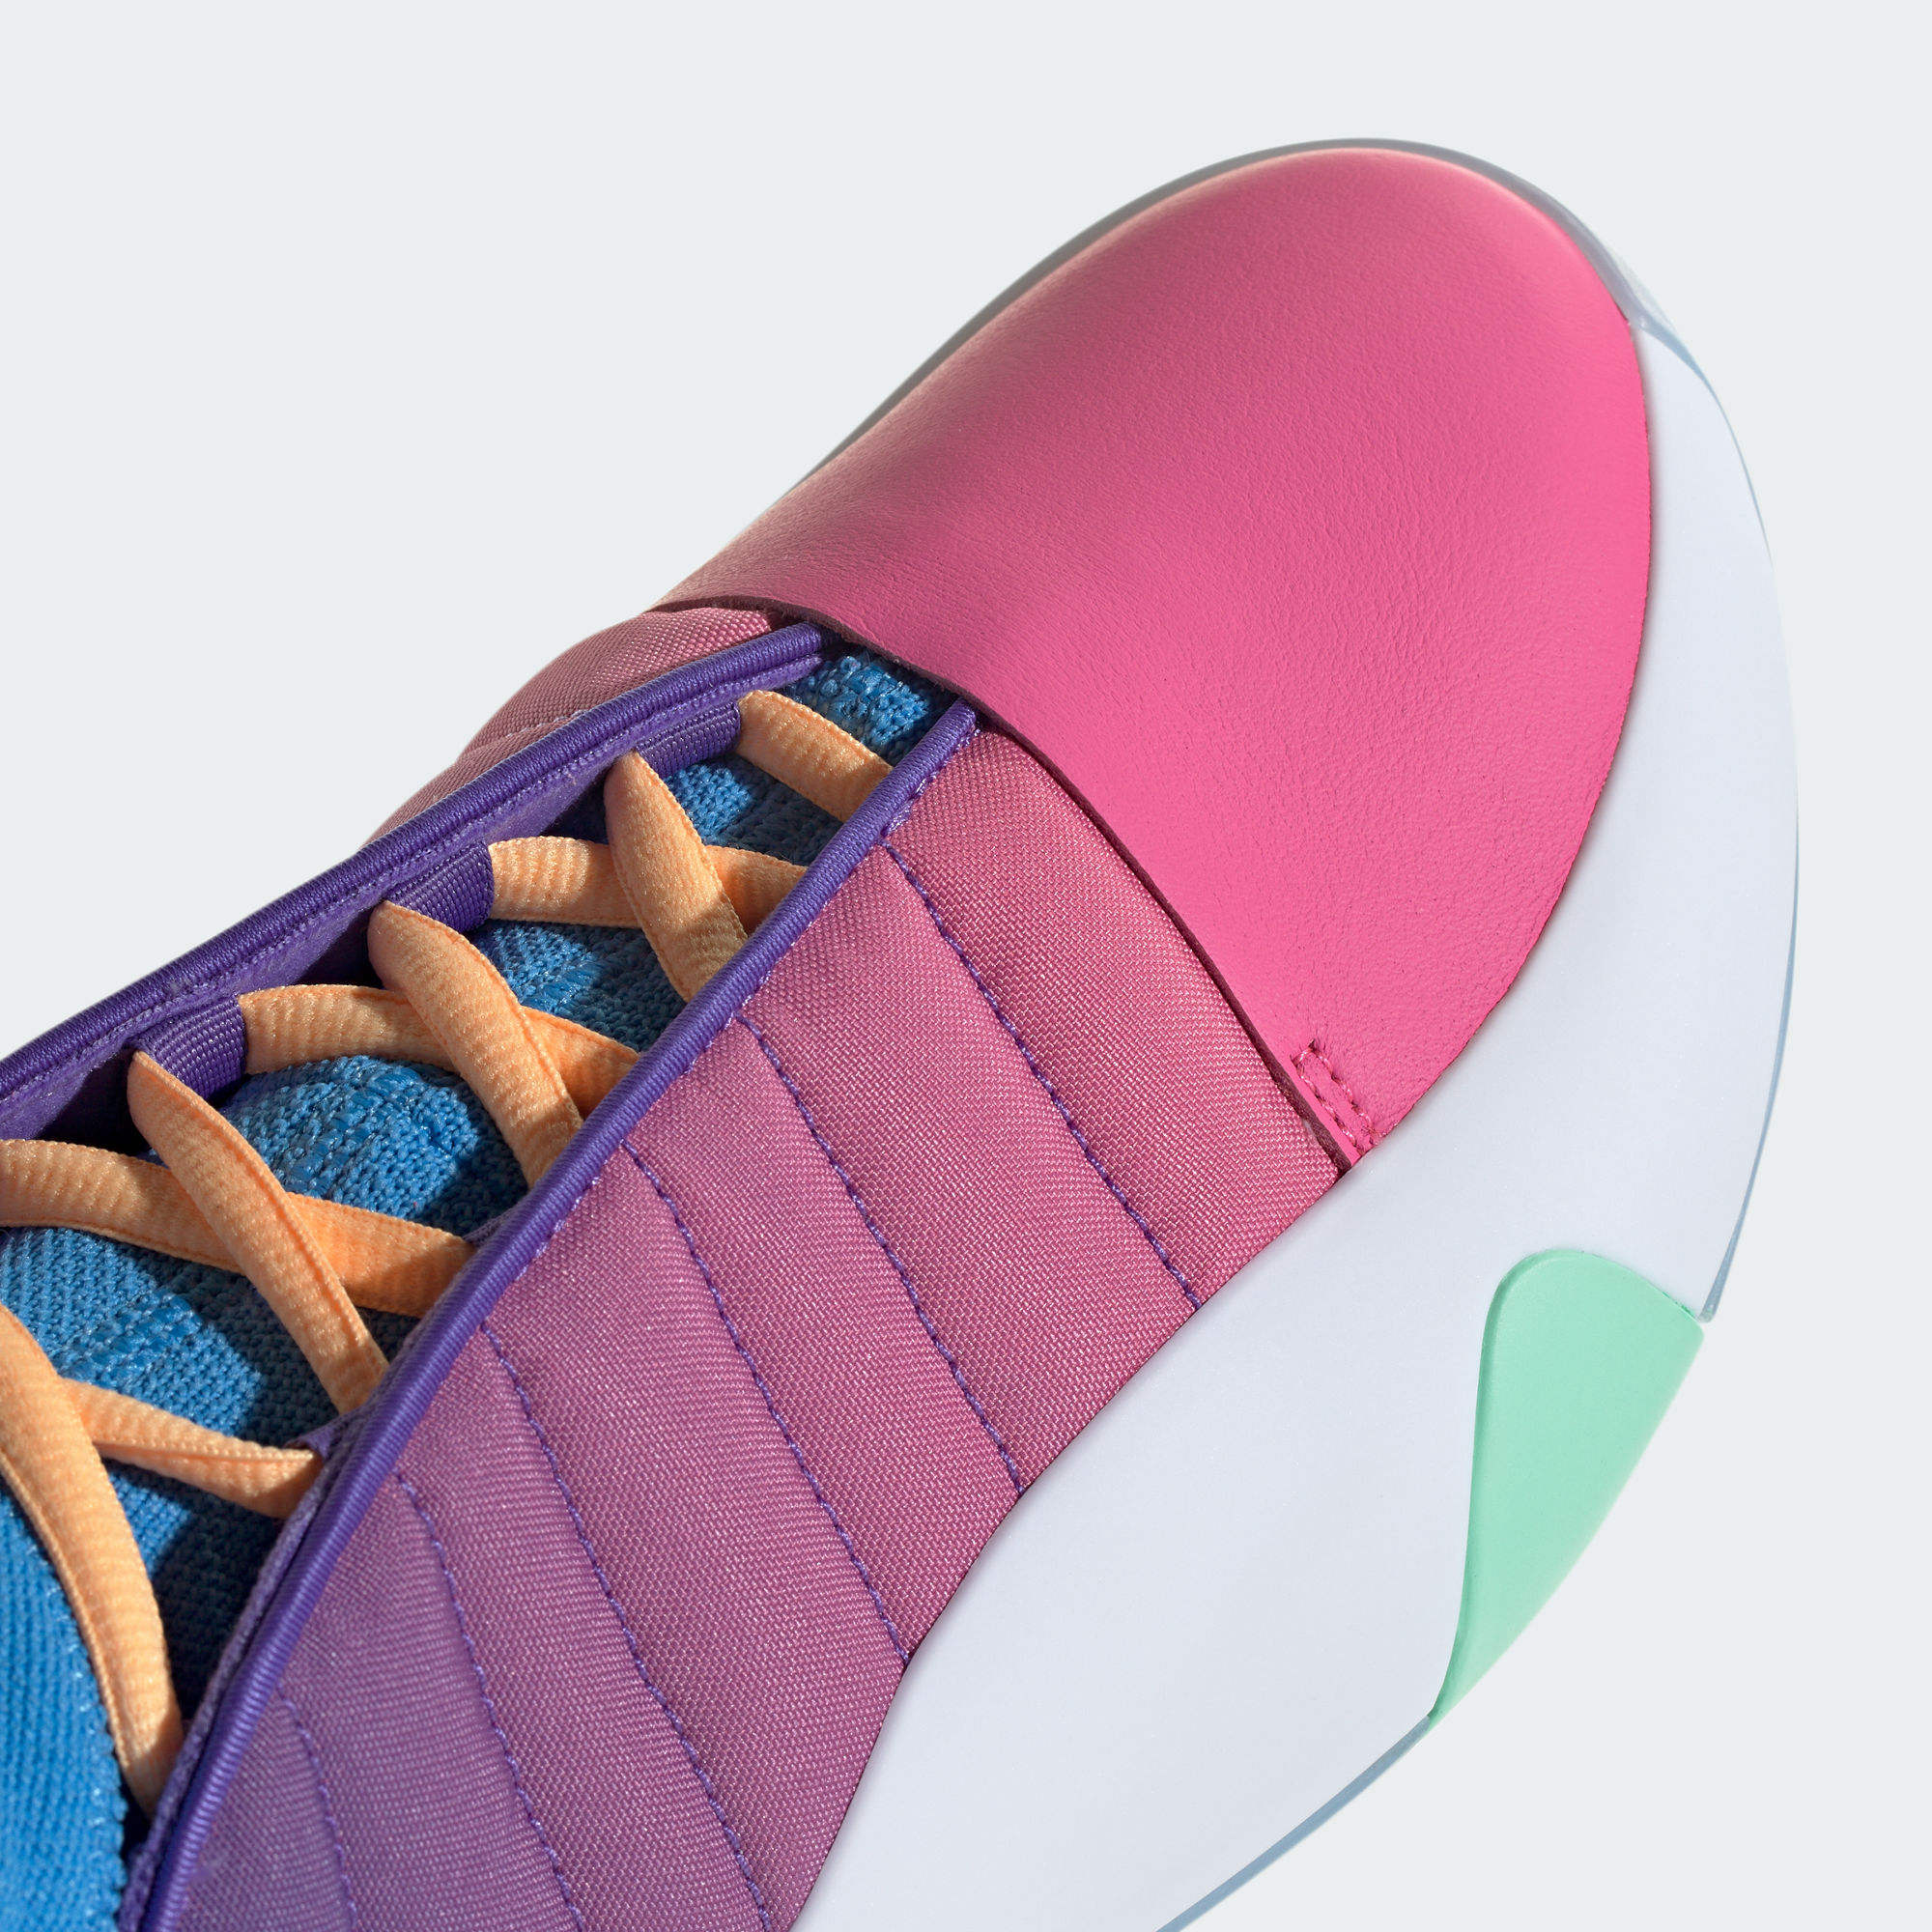 HARDEN VOLUME 7 籃球鞋- 紫色| 女子| adidas(愛迪達)香港官方網上商店